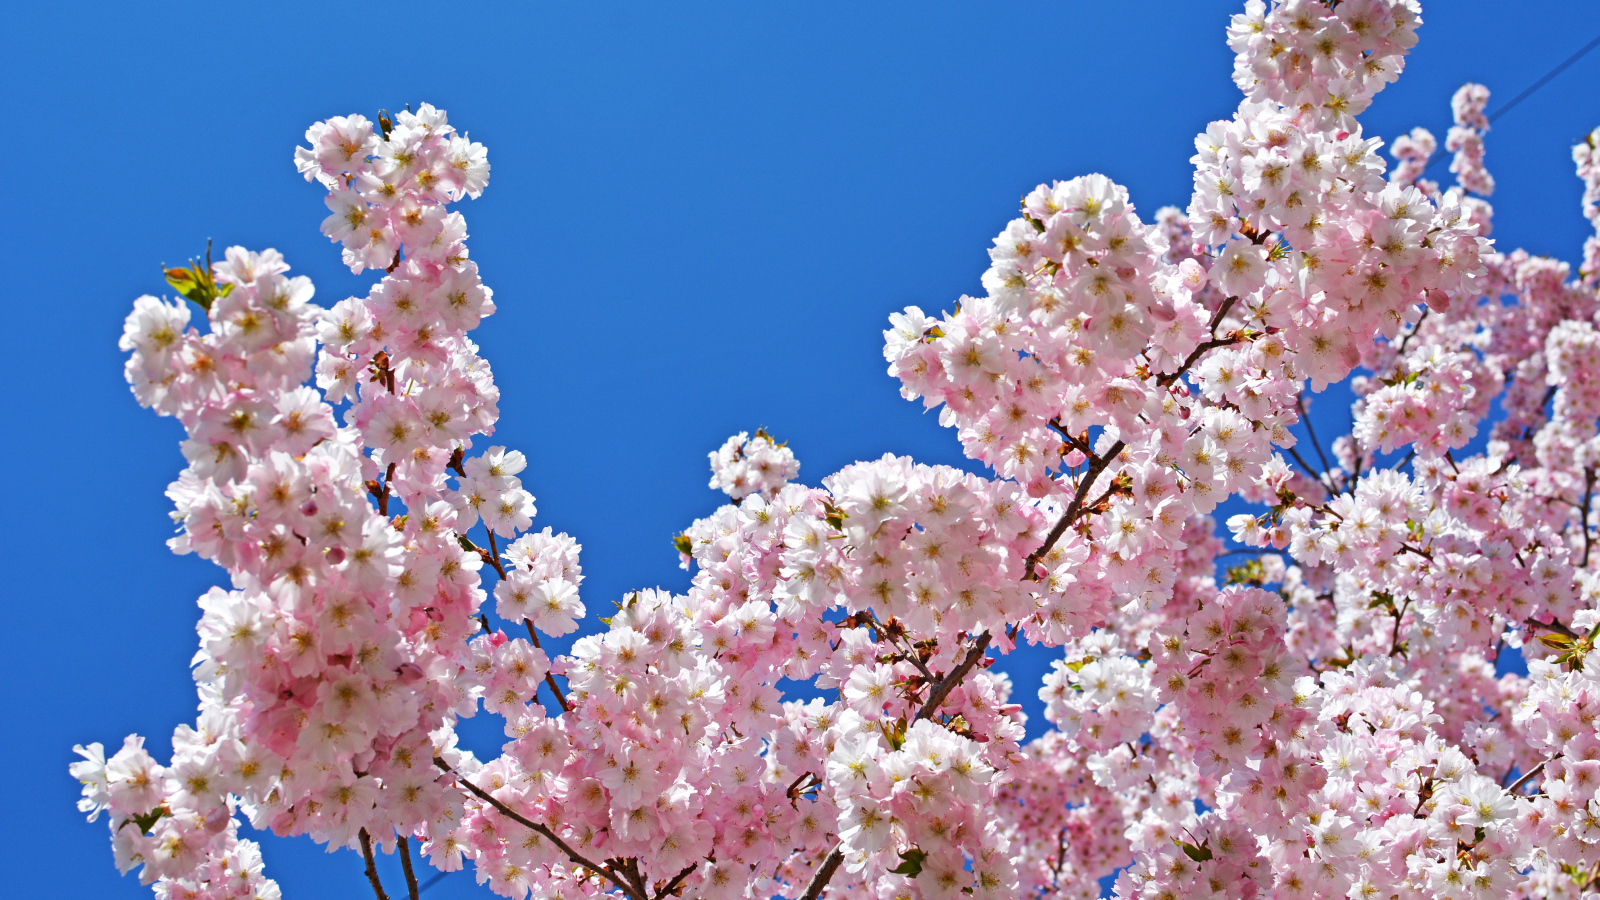 Розовые цветы на ветках дерева на фоне голубого неба весной